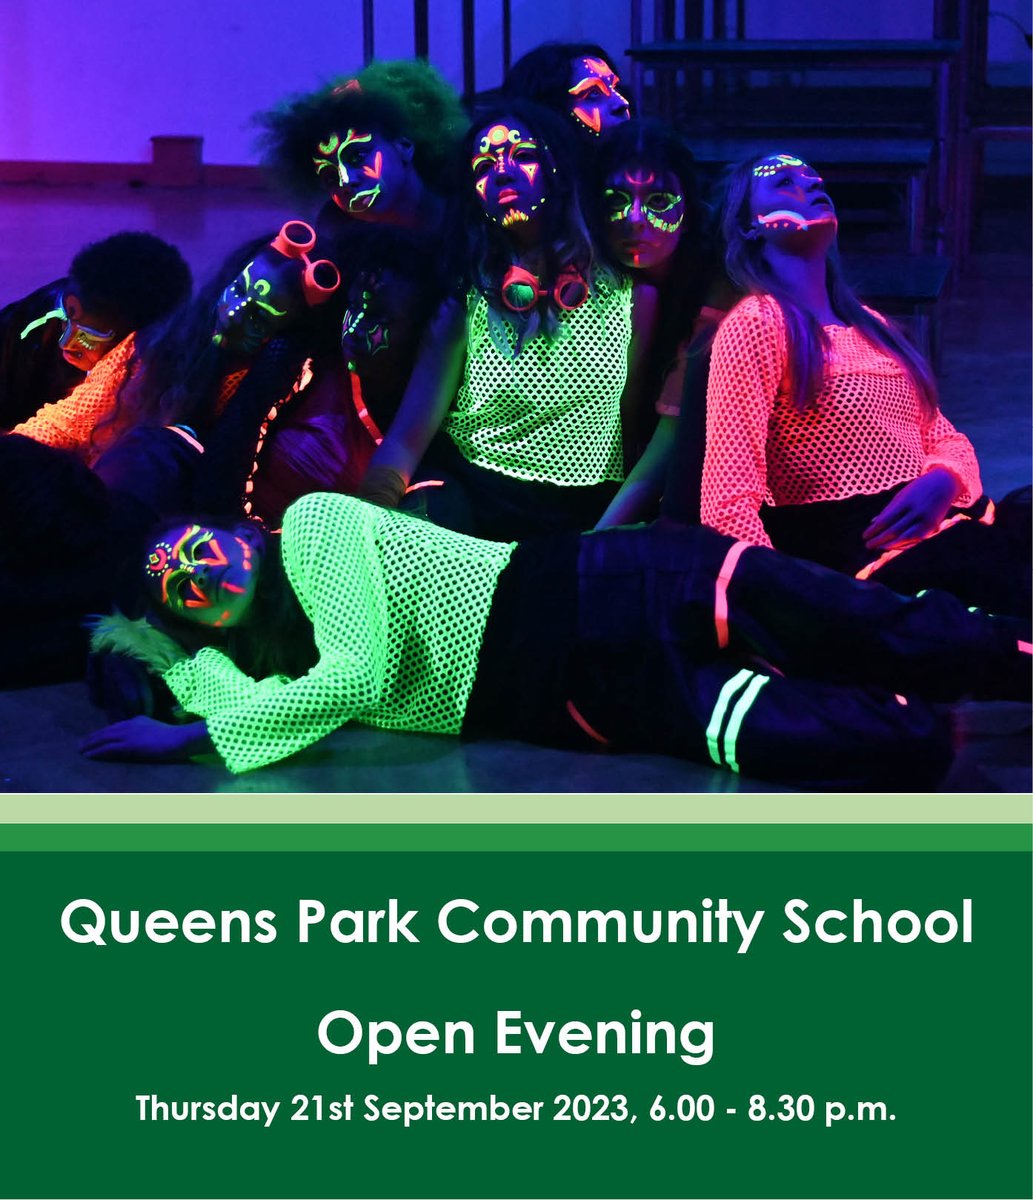 QPCS Open Evening: Thursday 21st September, 6.00 - 8.30pm